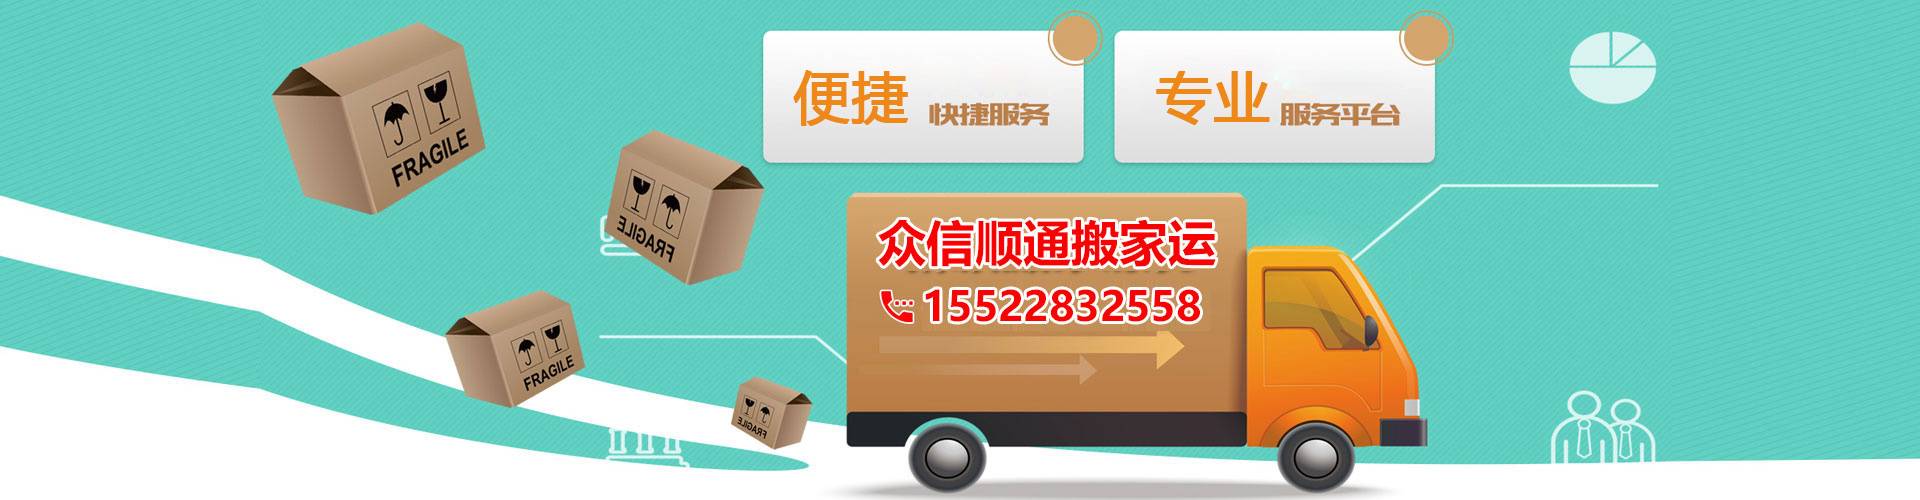 天津搬家公司-快速上门-天津众信顺通搬家运输服务有限公司